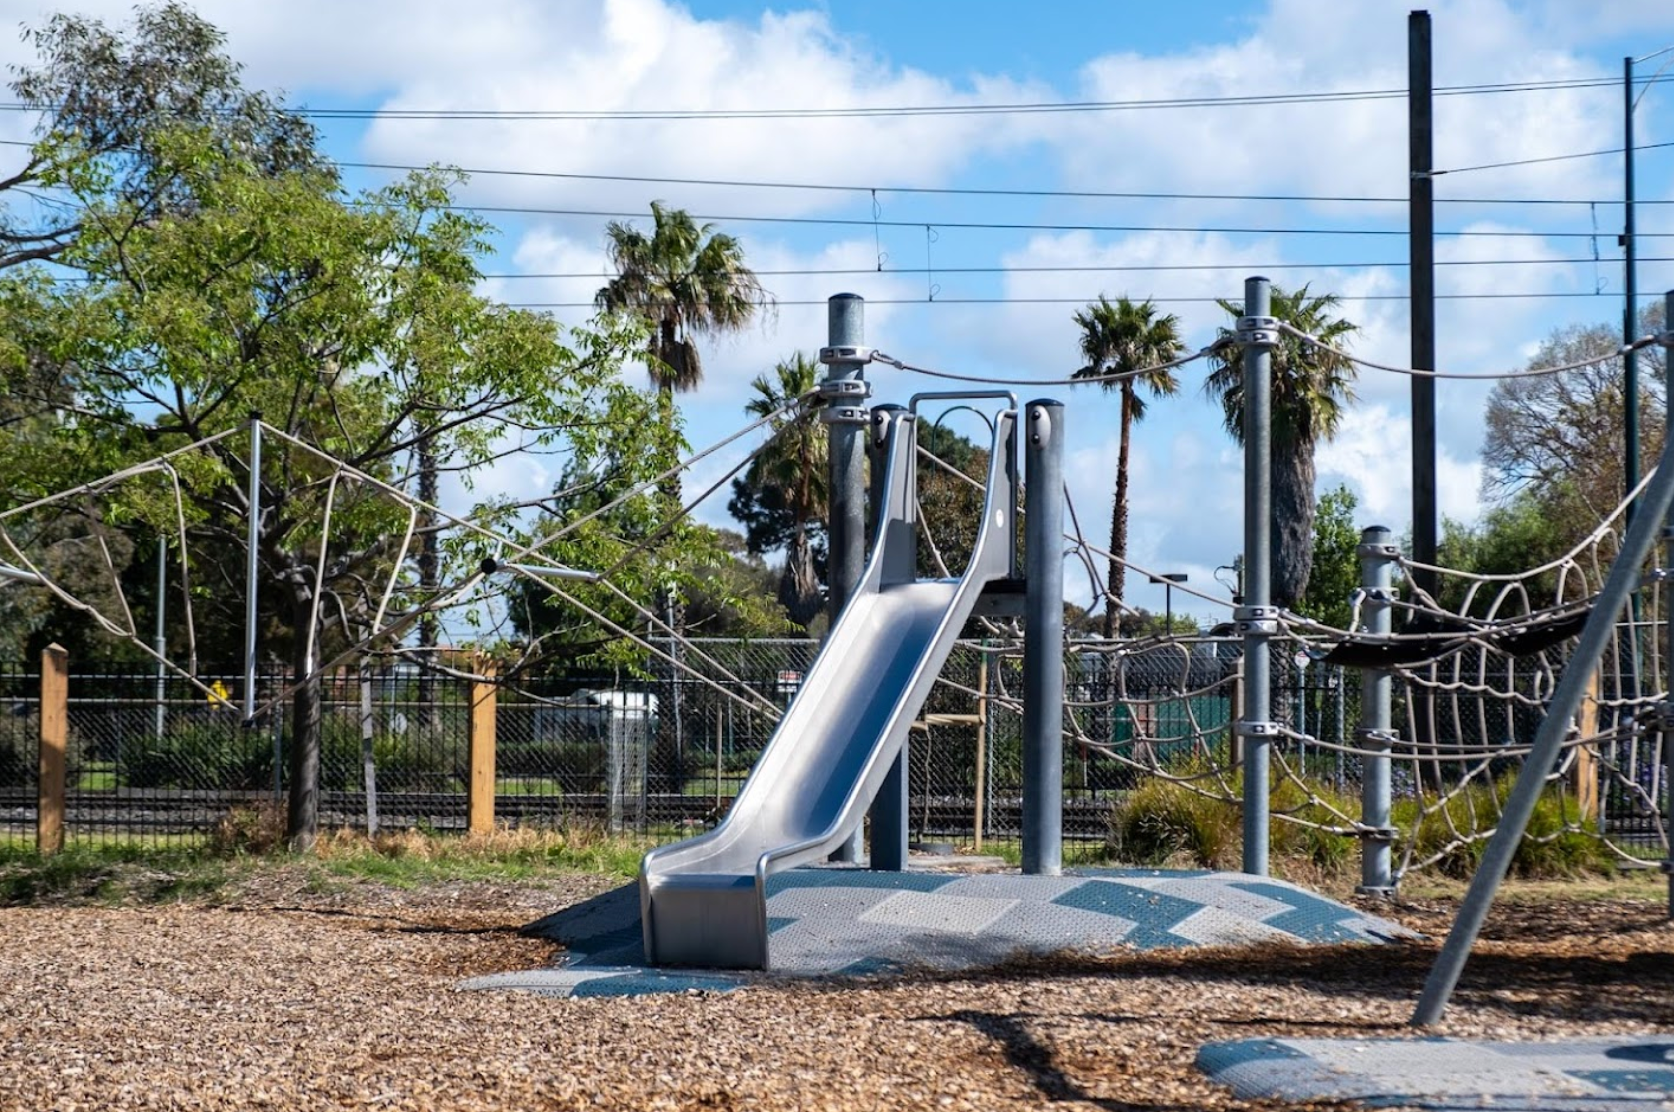 Centenary Park Playground